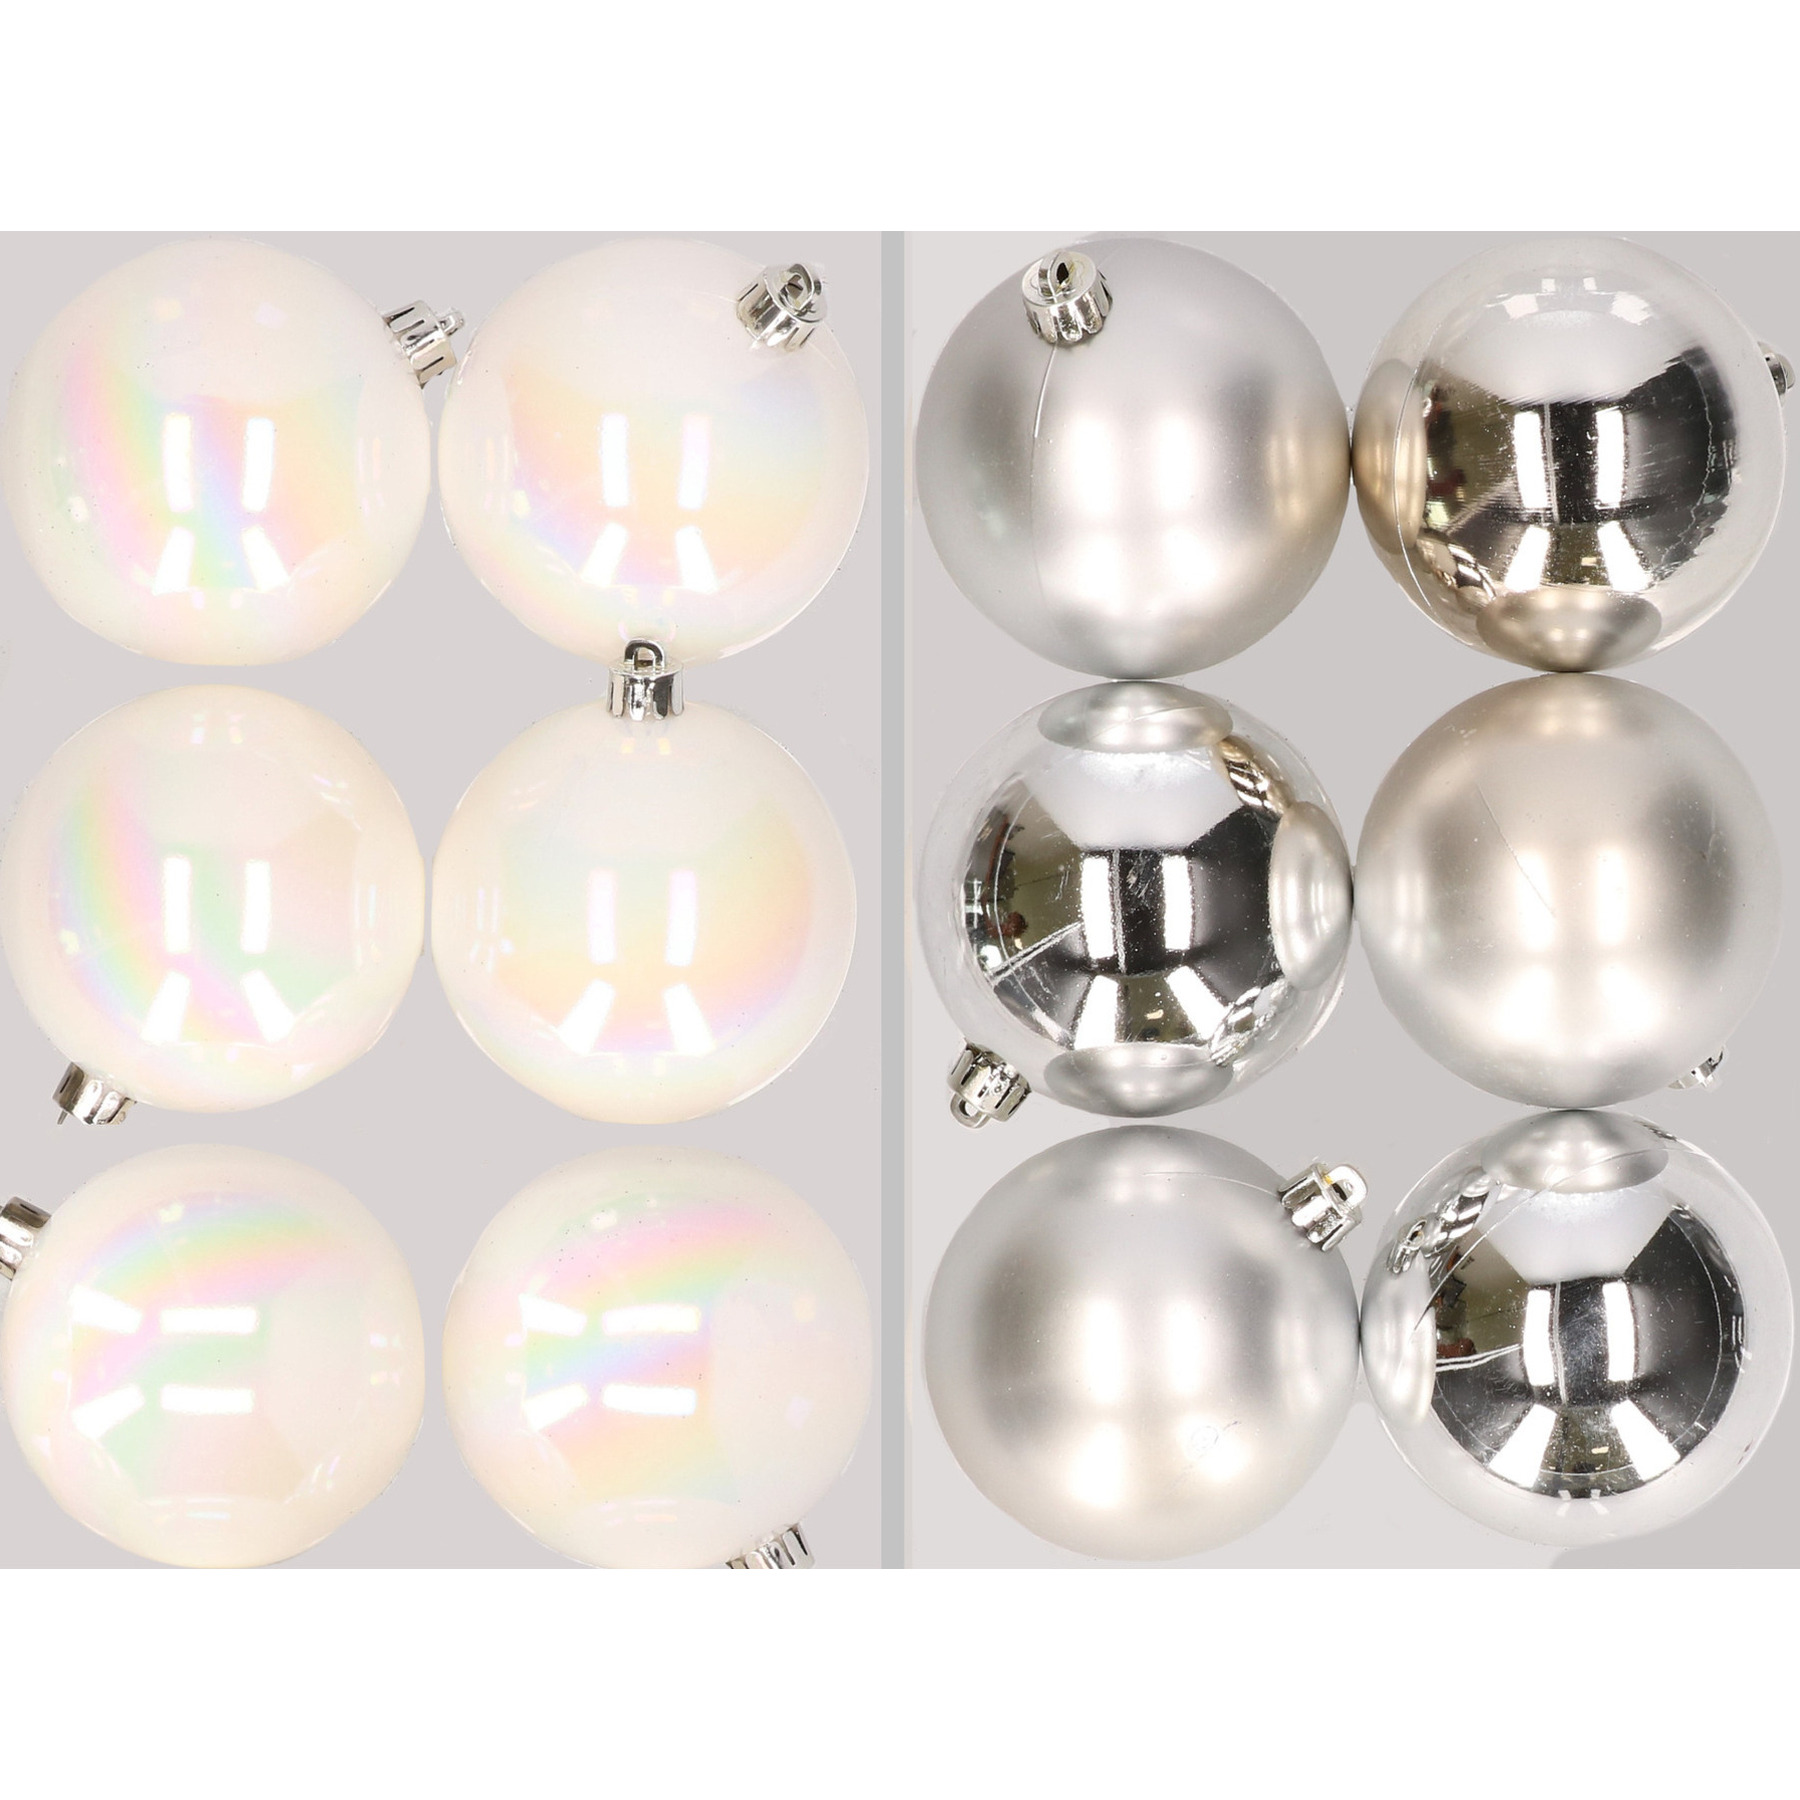 12x stuks kunststof kerstballen mix van parelmoer wit en zilver 8 cm